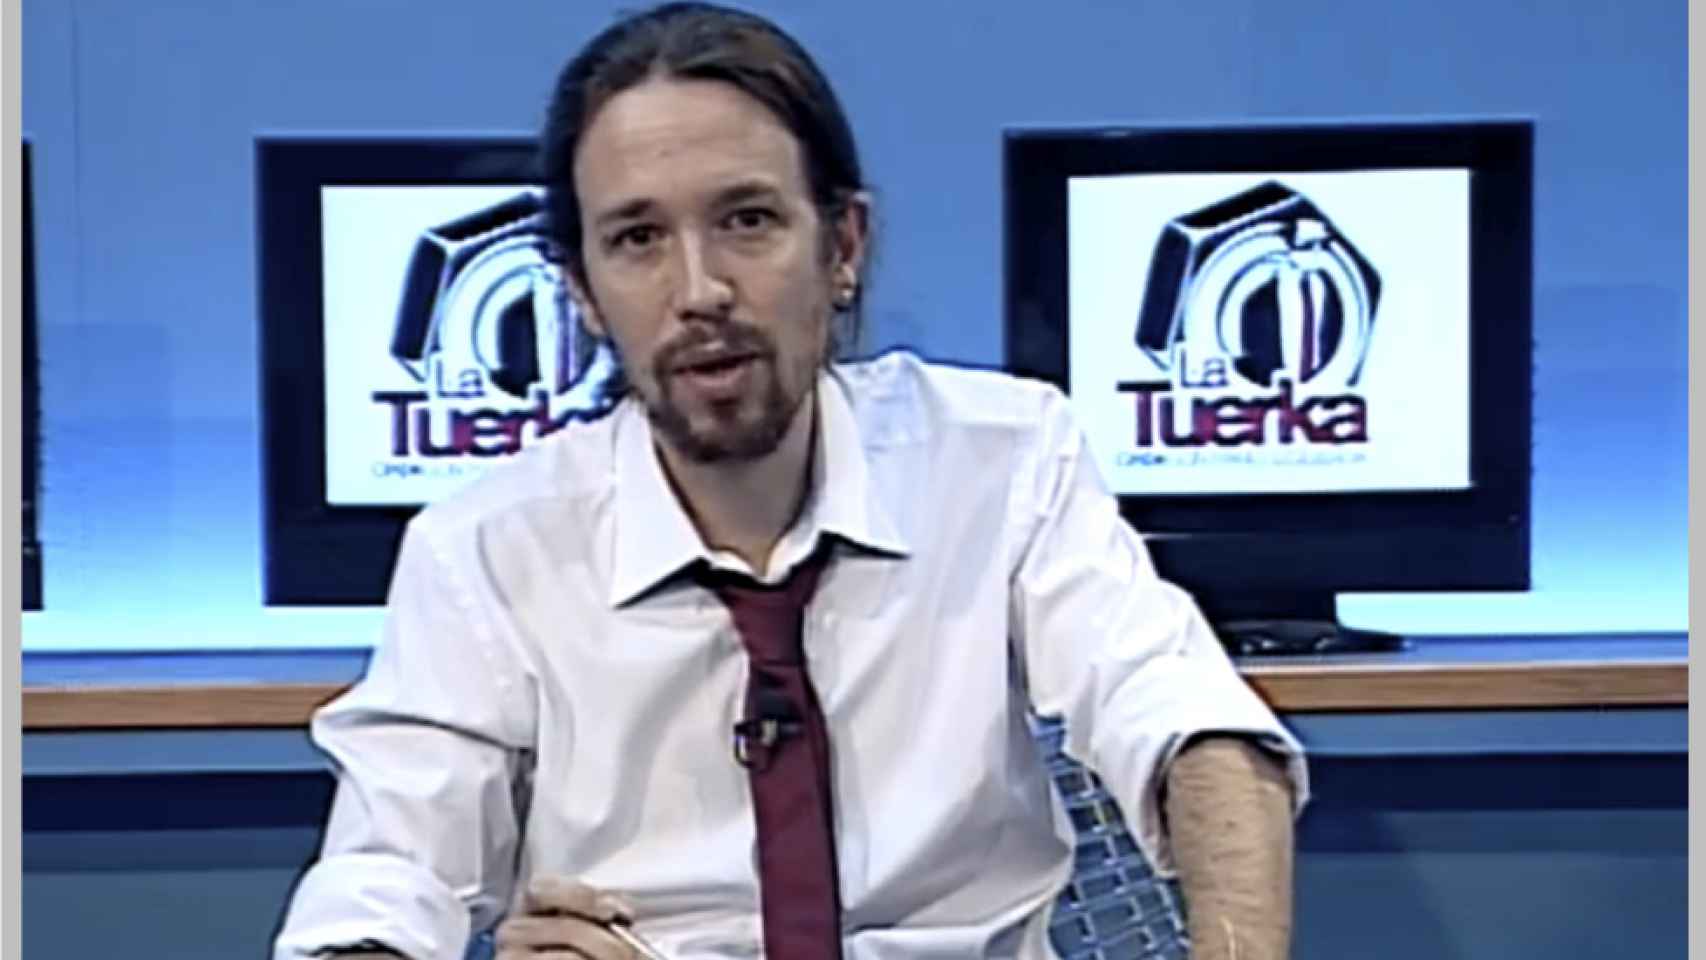 'La Tuerka', el programa que lanzó al estrellato a Pablo Iglesias